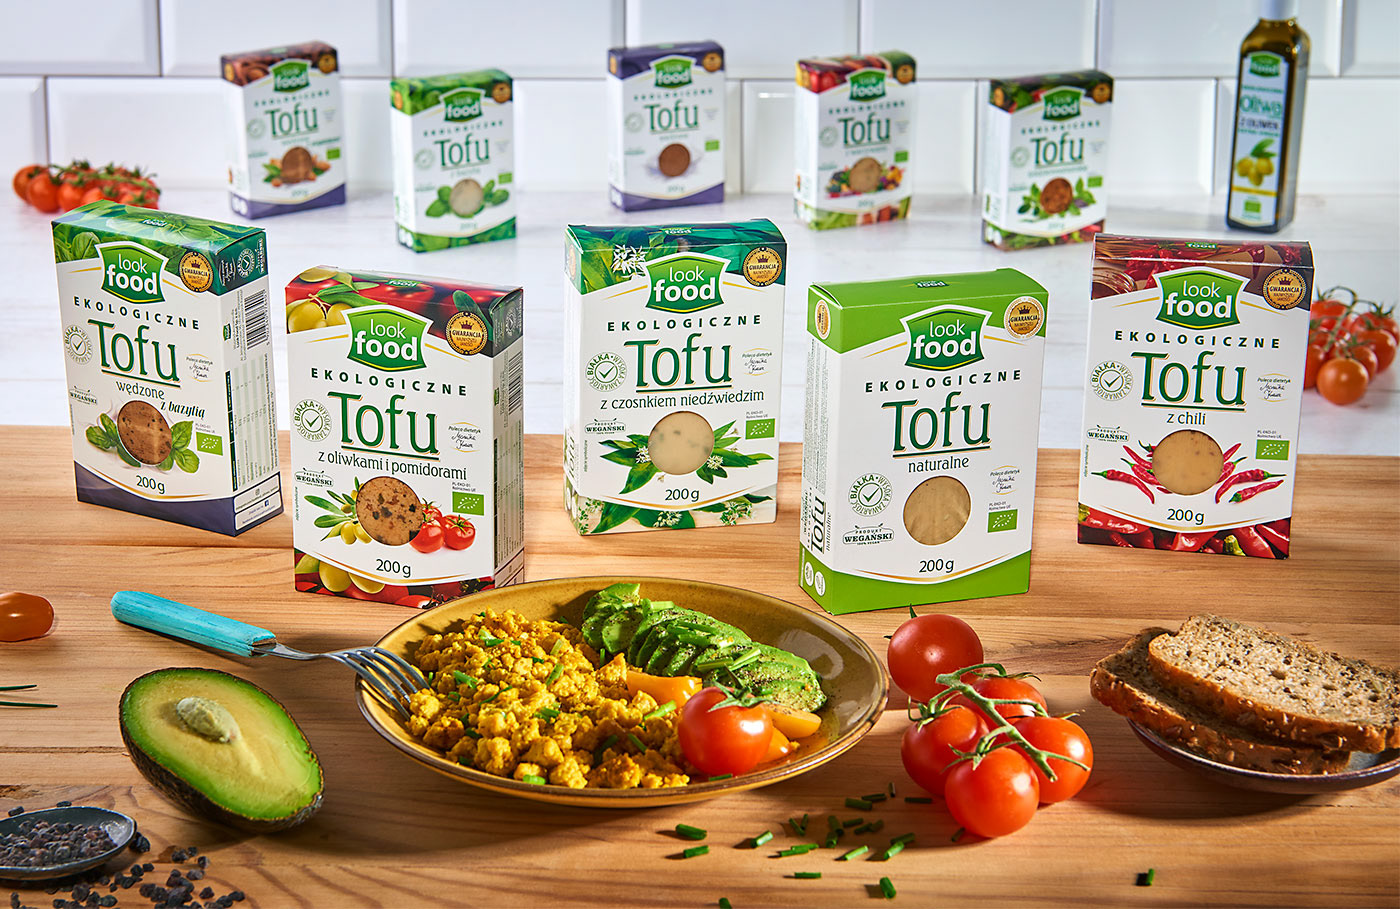 Tofu packaging series